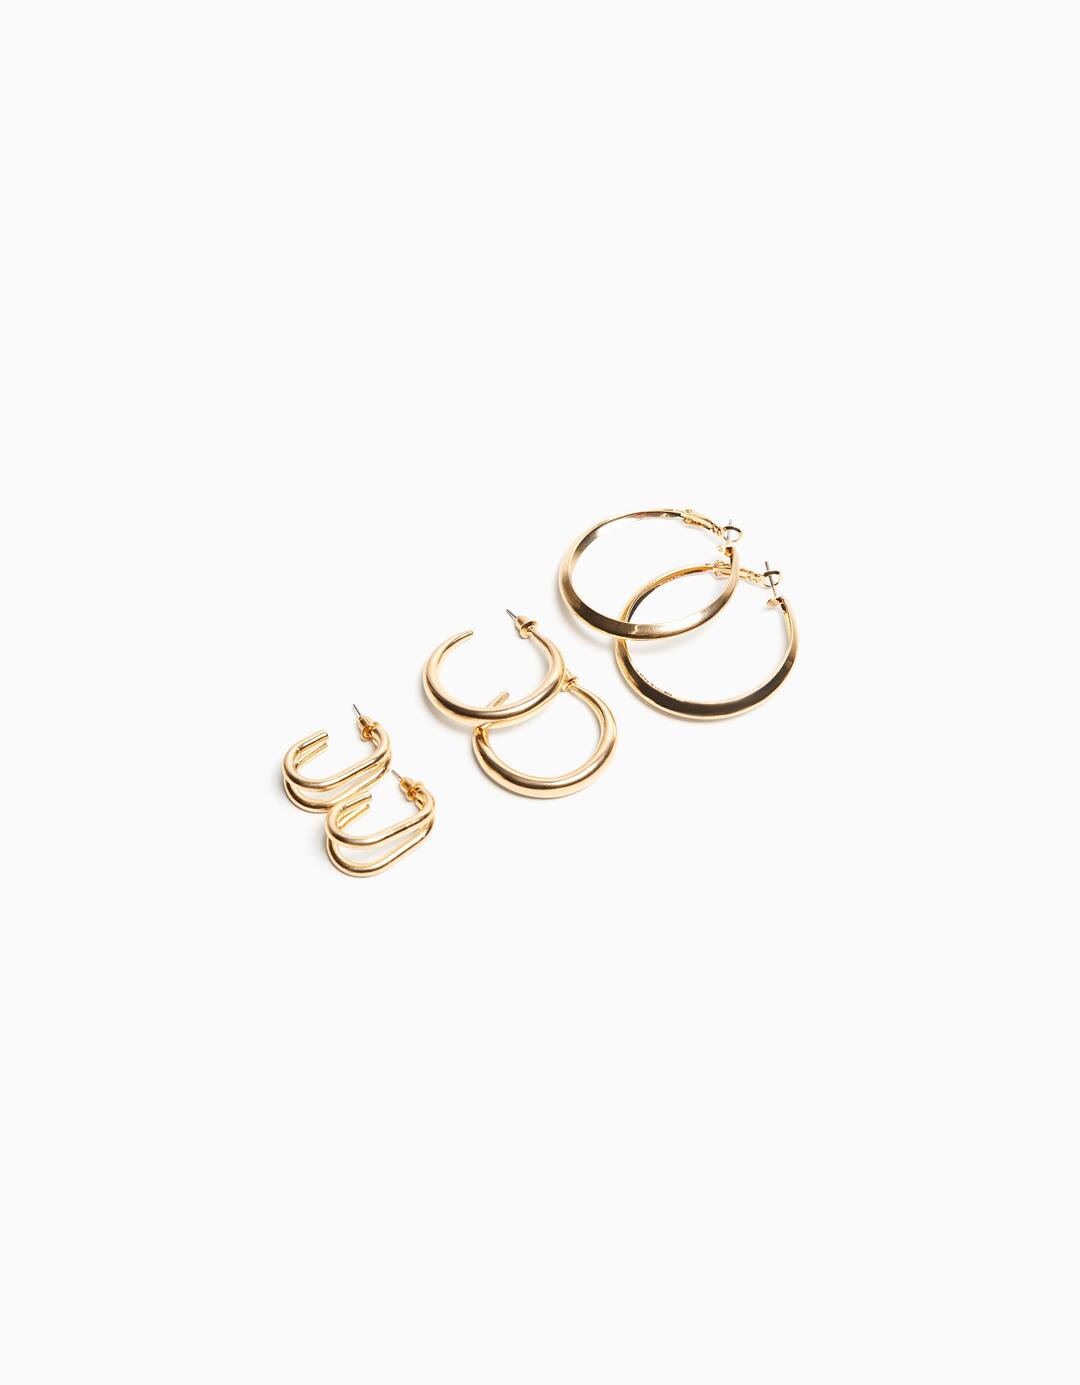 Set 3 pairs of hoop earrings